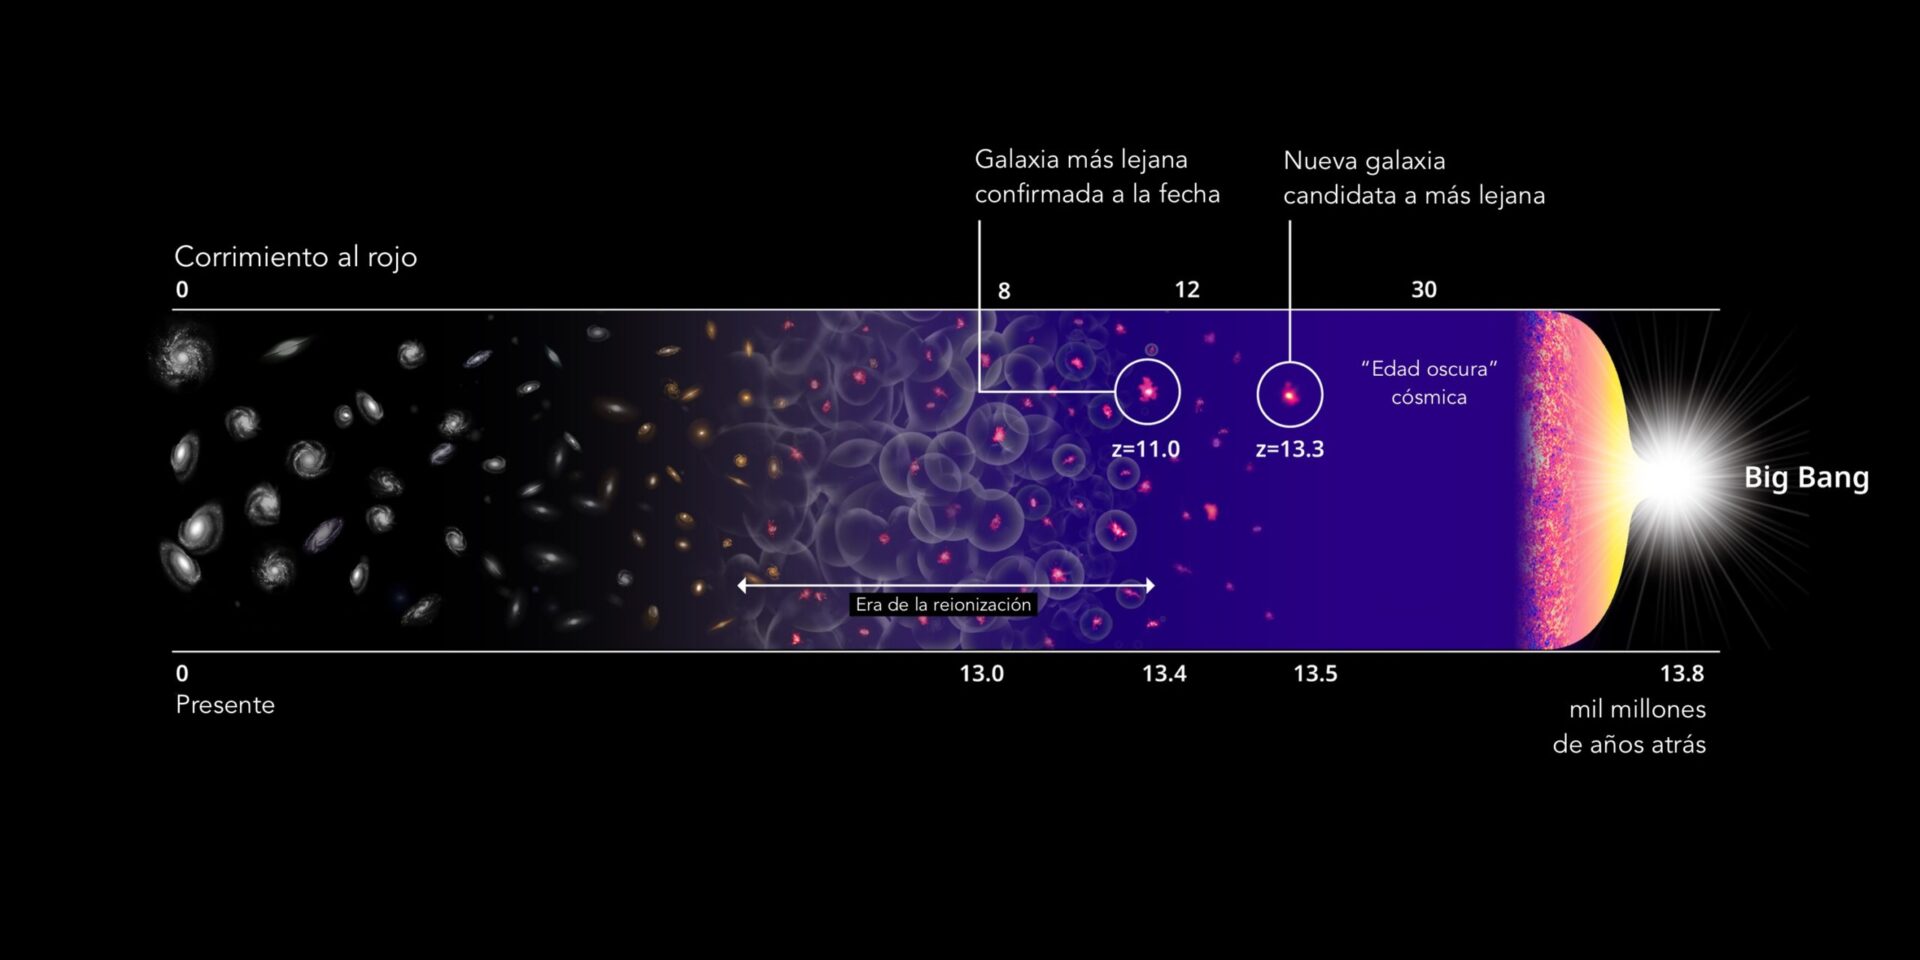 <p>La candidata a galaxia más lejana y la historia del Universo. Crédito: Harikane et al., NASA, ESA y P. Oesch (Universidad de Yale)</p>
